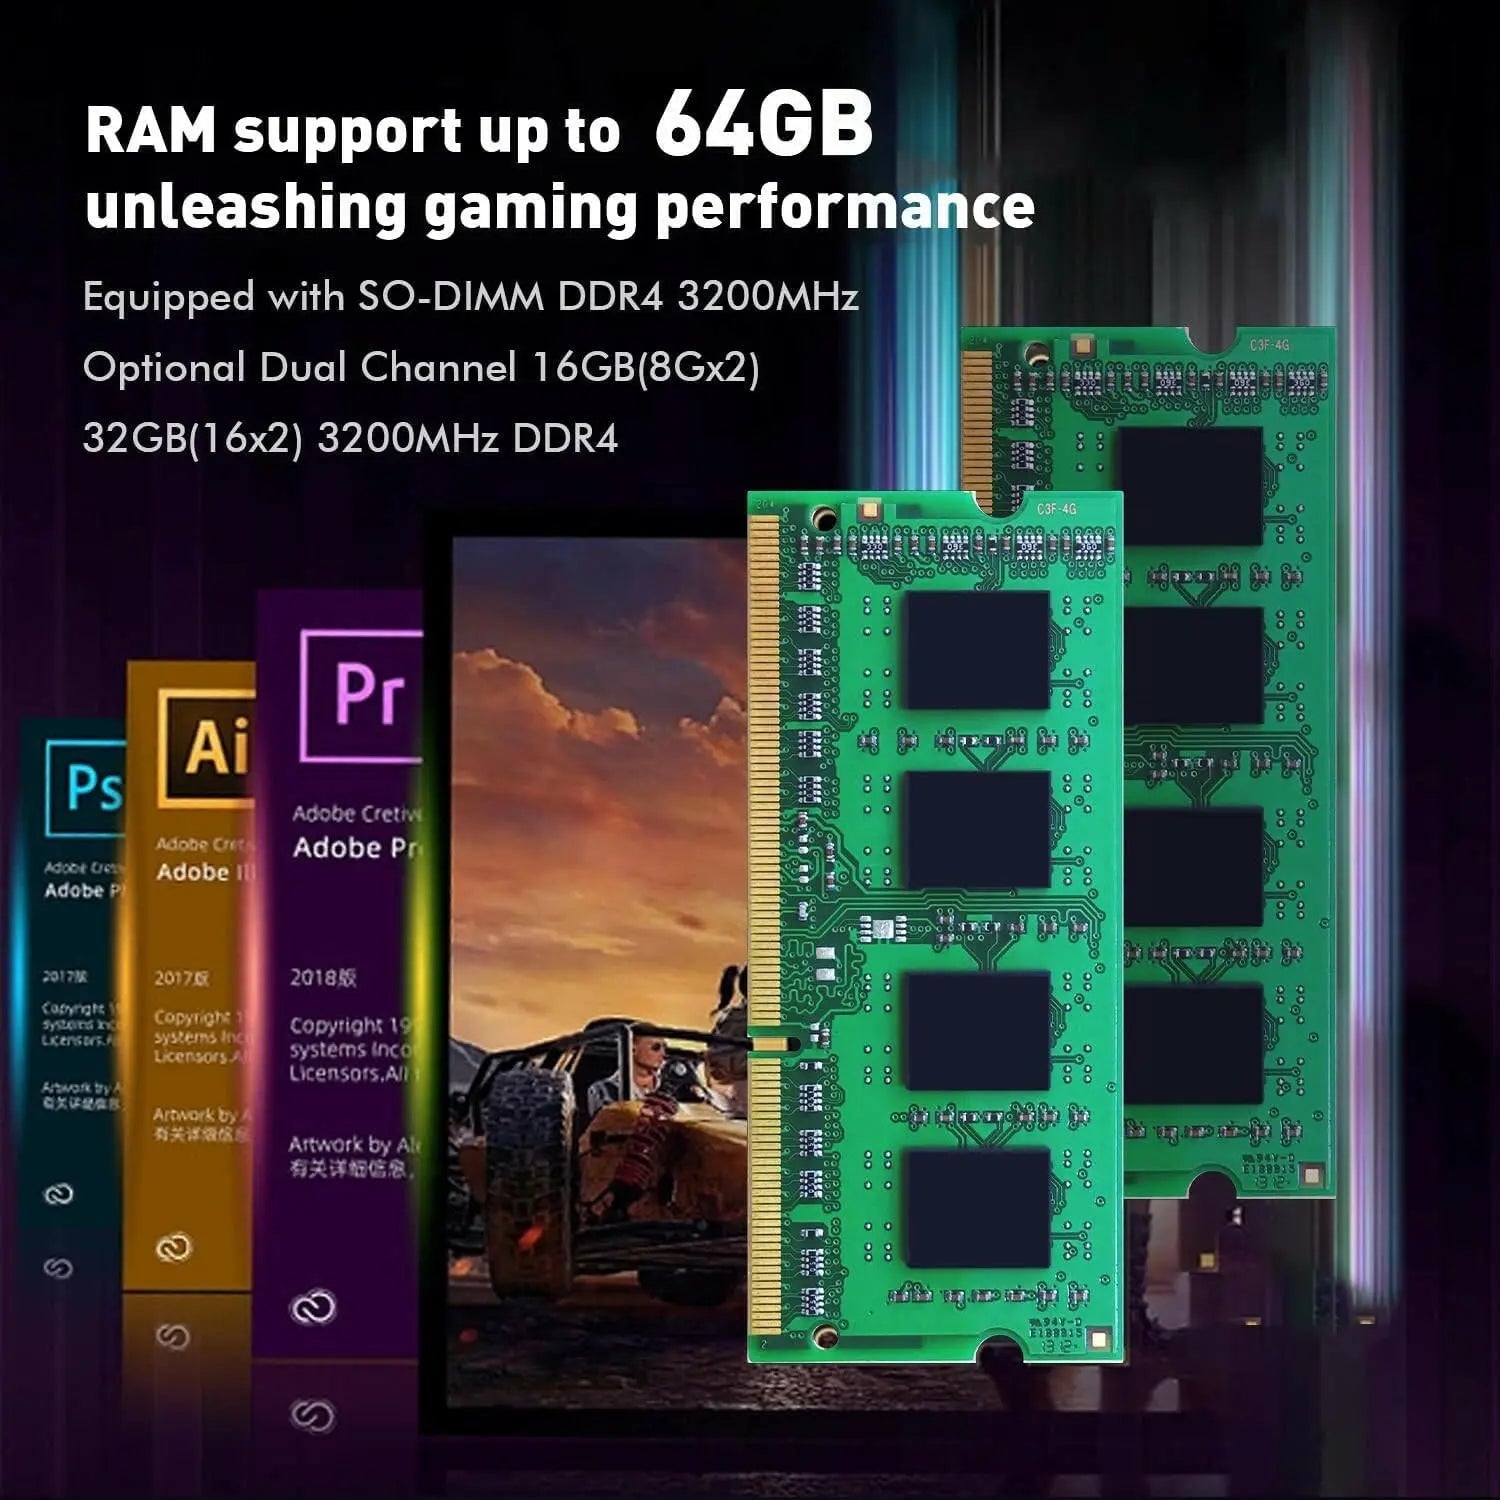 TRIGKEY Mini PC Ryzen 7 5800H（8C/16T,Up to 4.4GHz） 32G DDR4 1T SSD, Desktop Computer Support